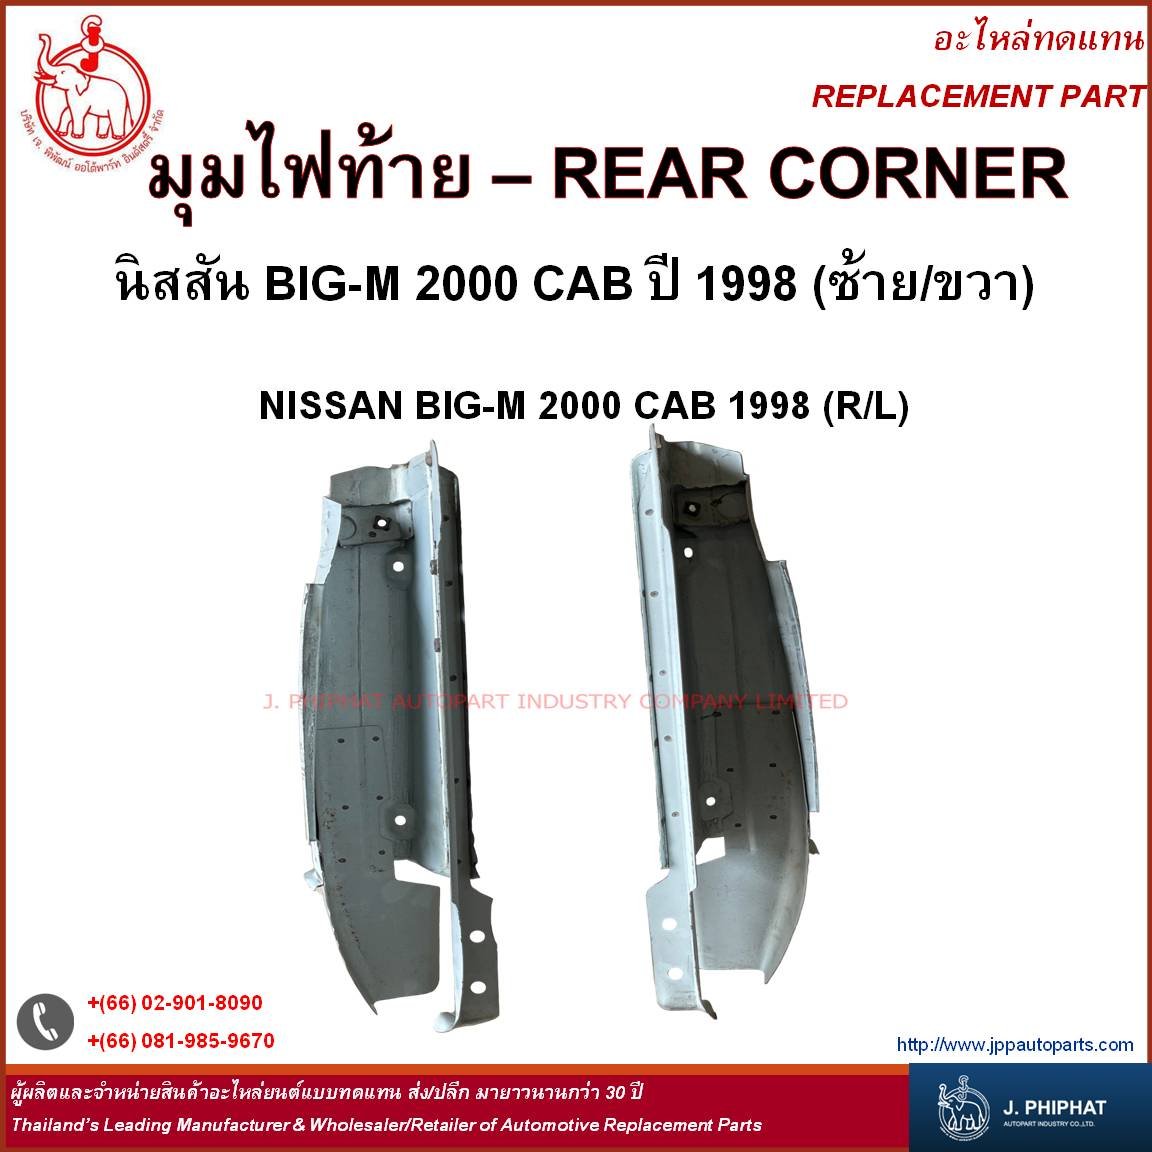 Rear Corner - NISSAN BIG-M 2000 CAB '98 (R/L)